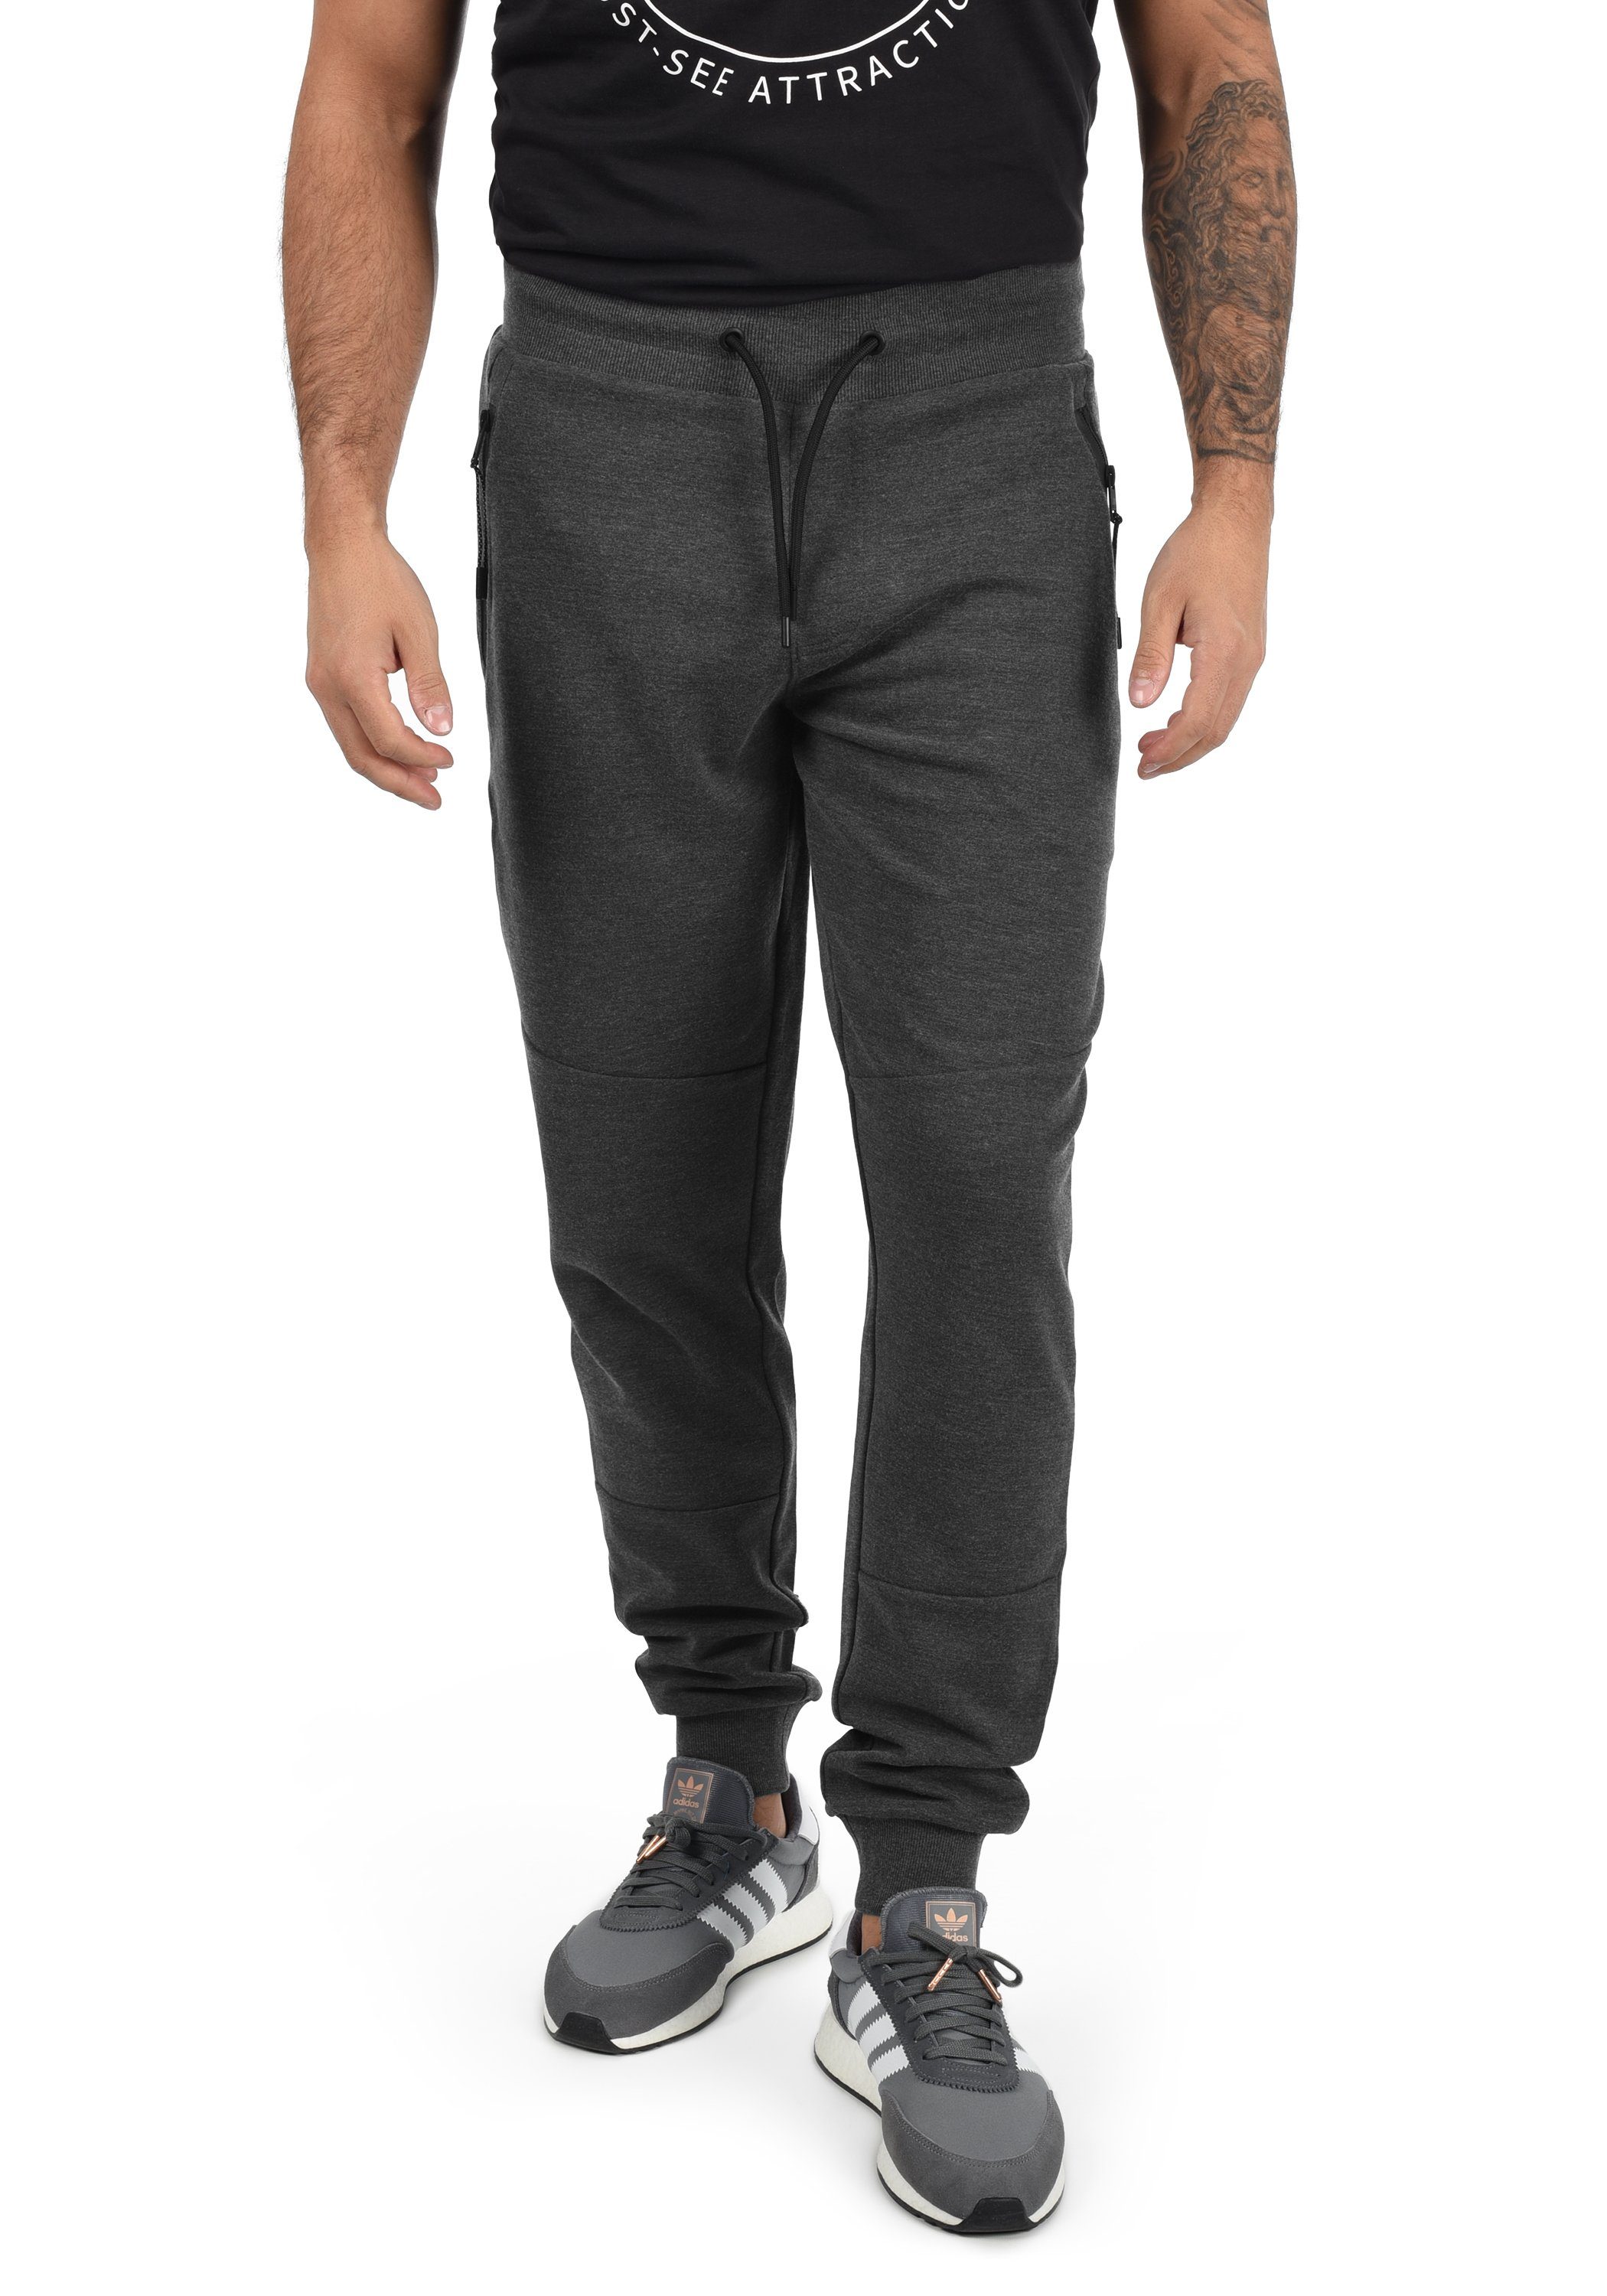 Beschränkt auf direkt verwaltete Filialen Solid Jogginghose SDGello Grey Sweatpants Dark (8288) Melange